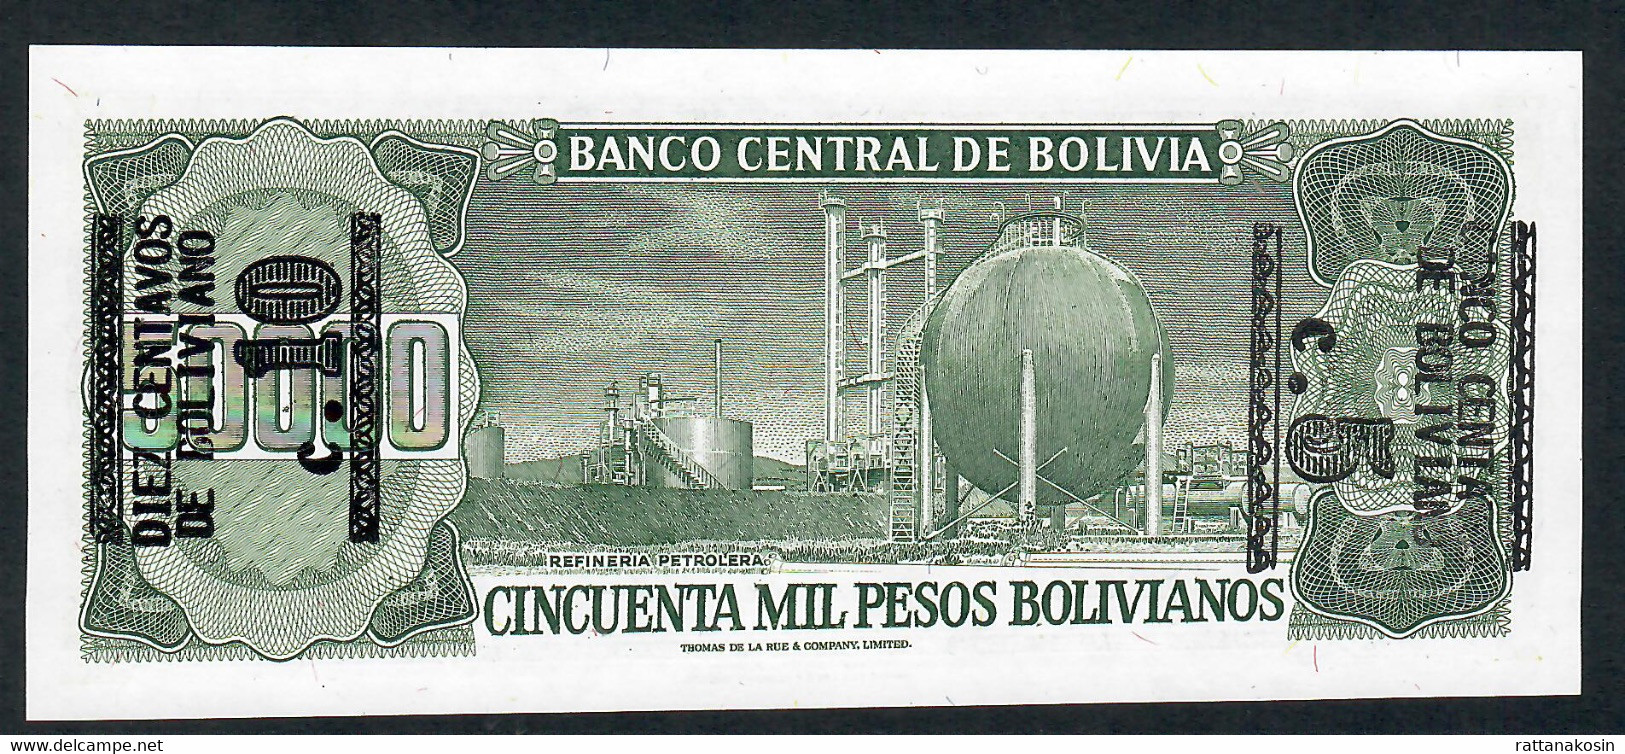 BOLIVIA P196d 5 CENTAVOS/50.000 P.B.1984 10c Left Overprint Back  UNC. - Bolivia